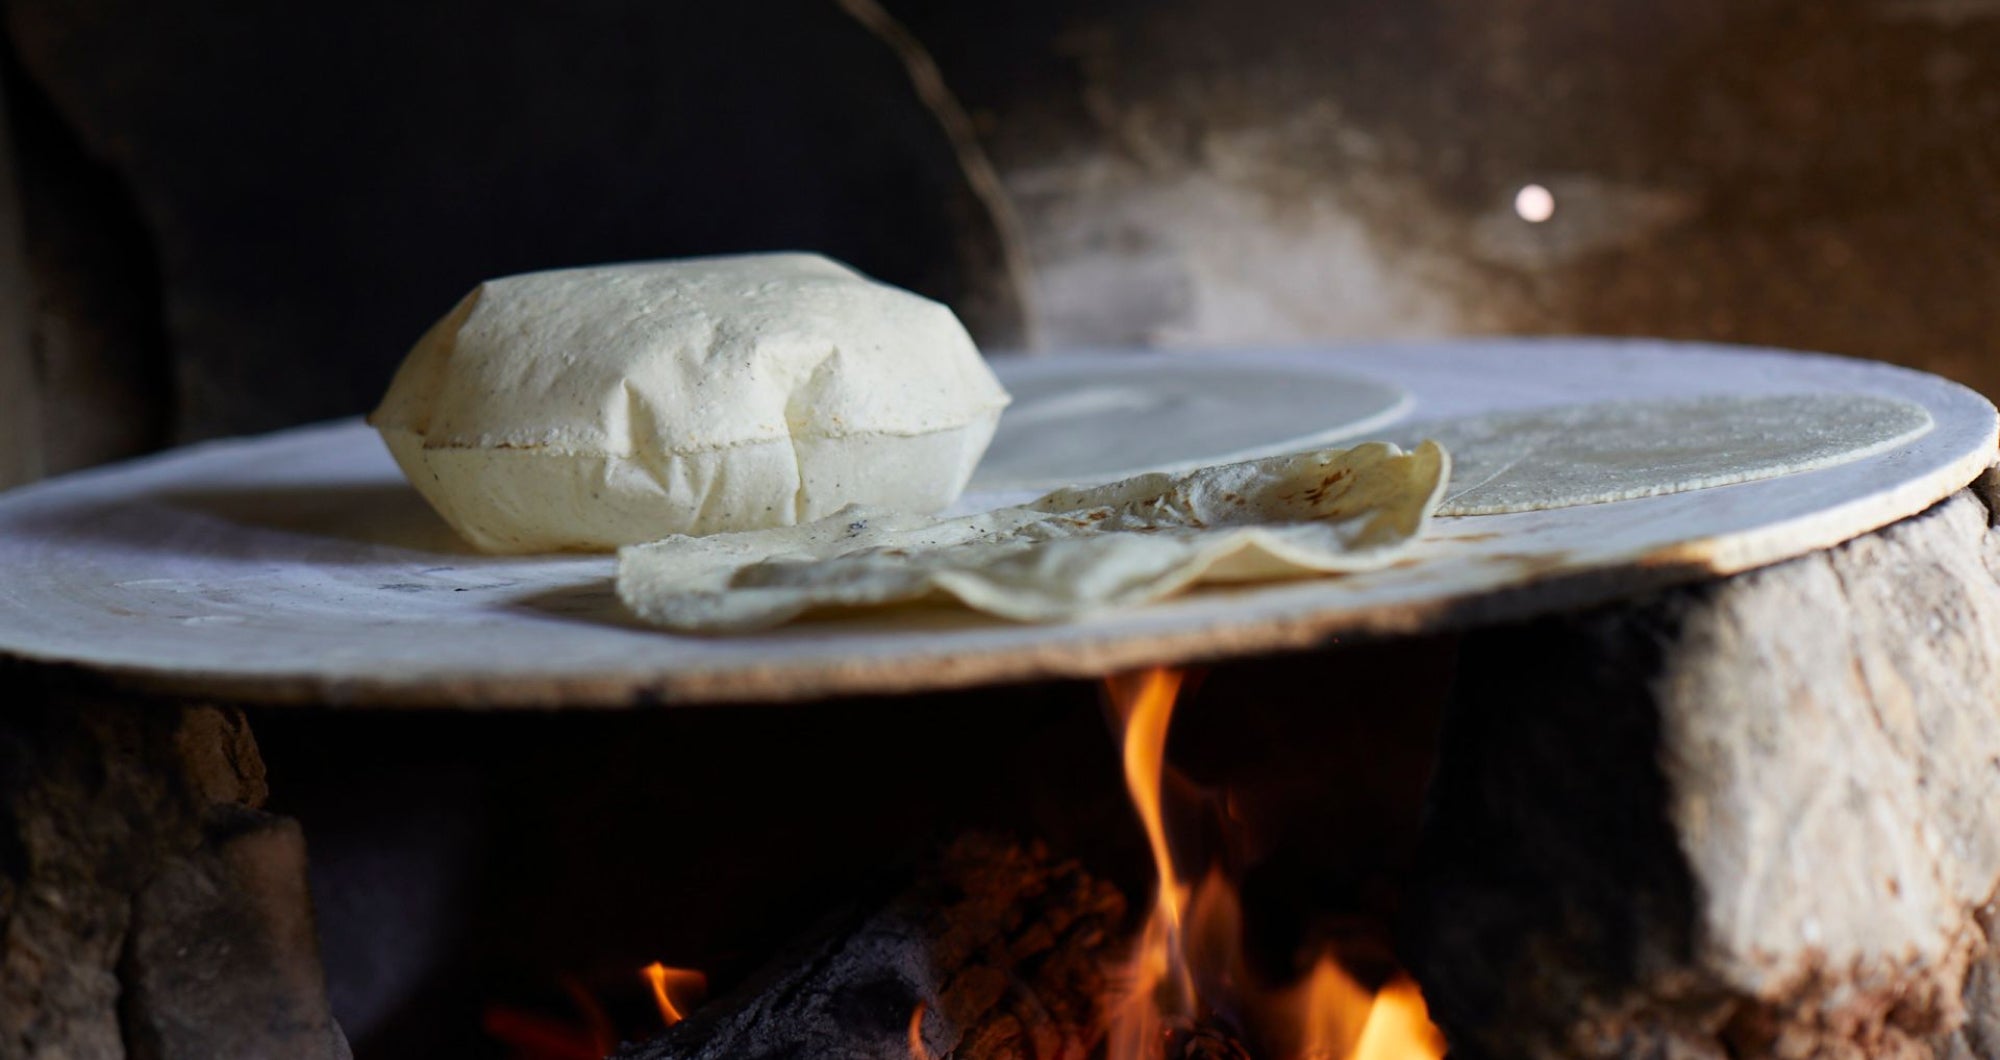 La anatomía de la 'pancita' de la tortilla